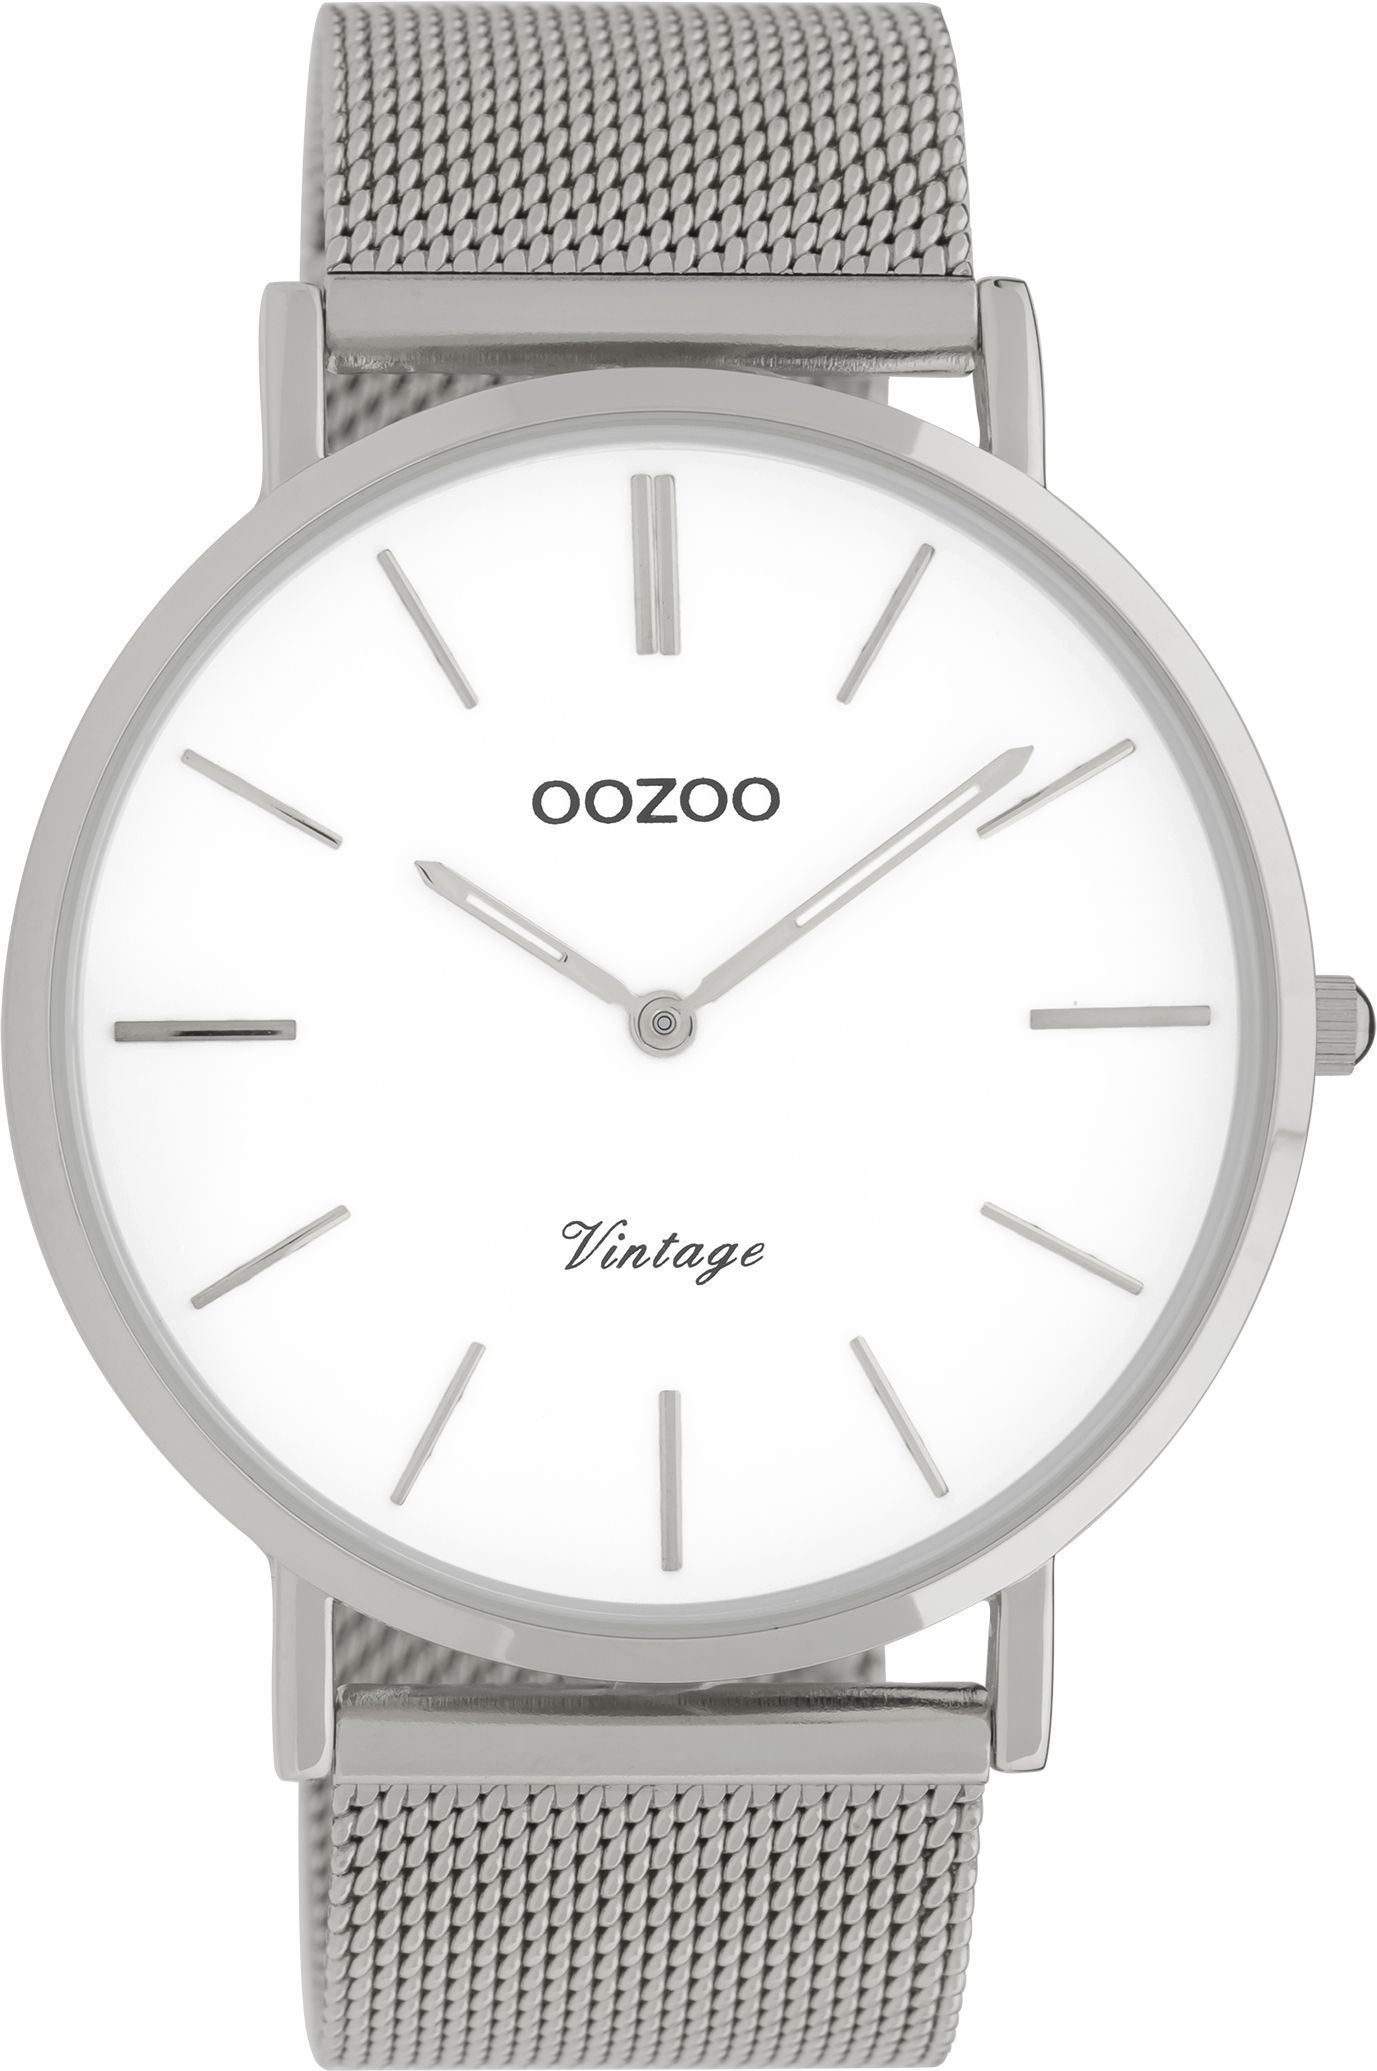 OOZOO Vintage C9900